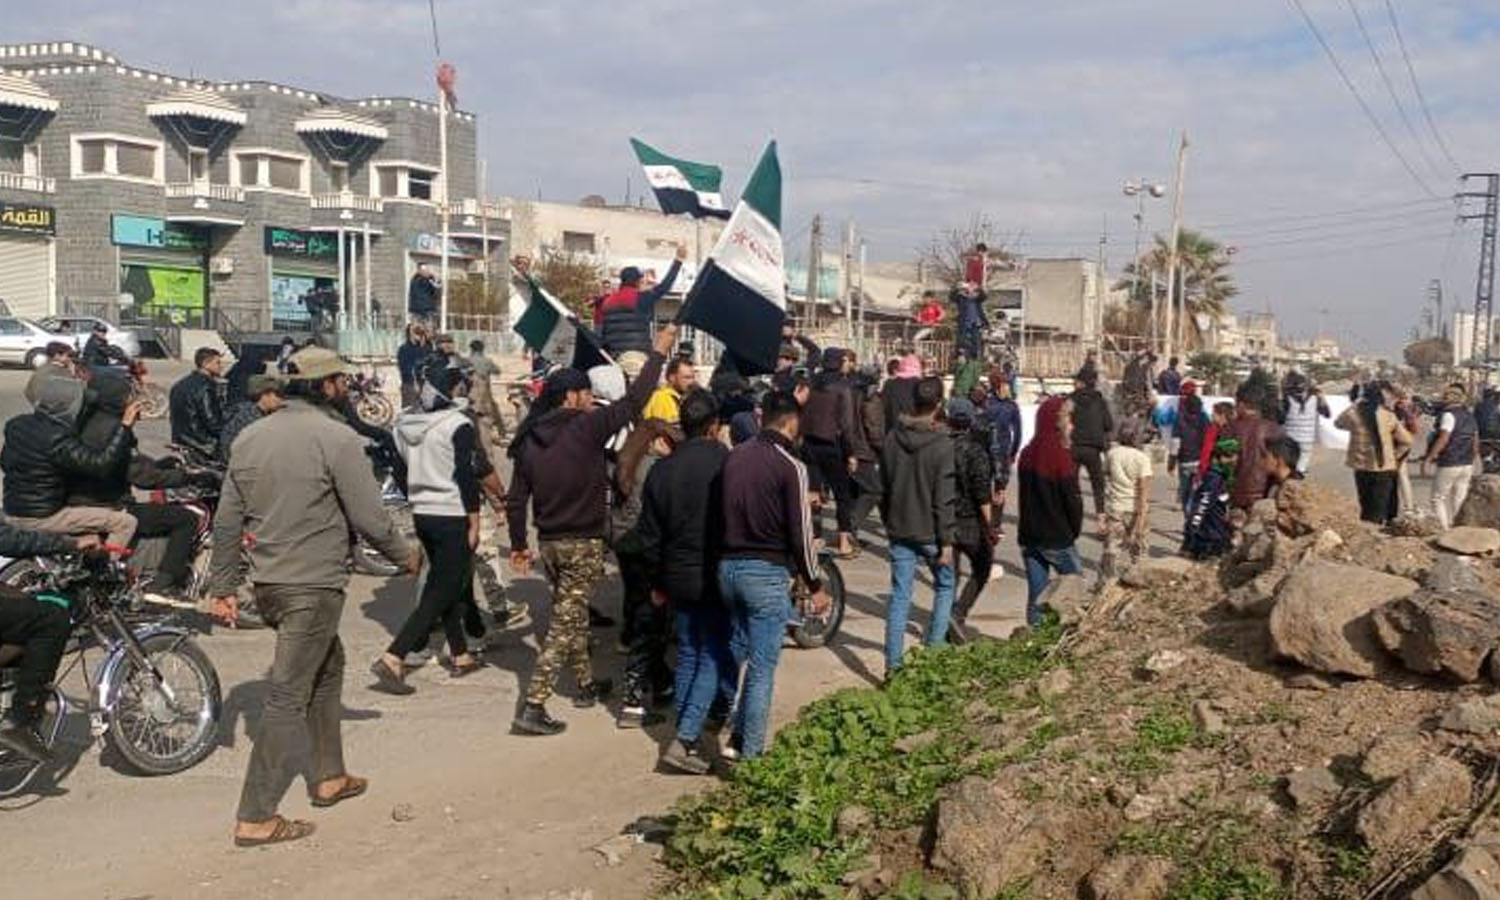 احتجاجات في مدينة جاسم شمالي درعا للمطالبة بالإفراج عن المعتقلين- 21 كانون الأول 2022 (ناشطون/ غرف أخبار محلية عبر تطبيق واتس آب)